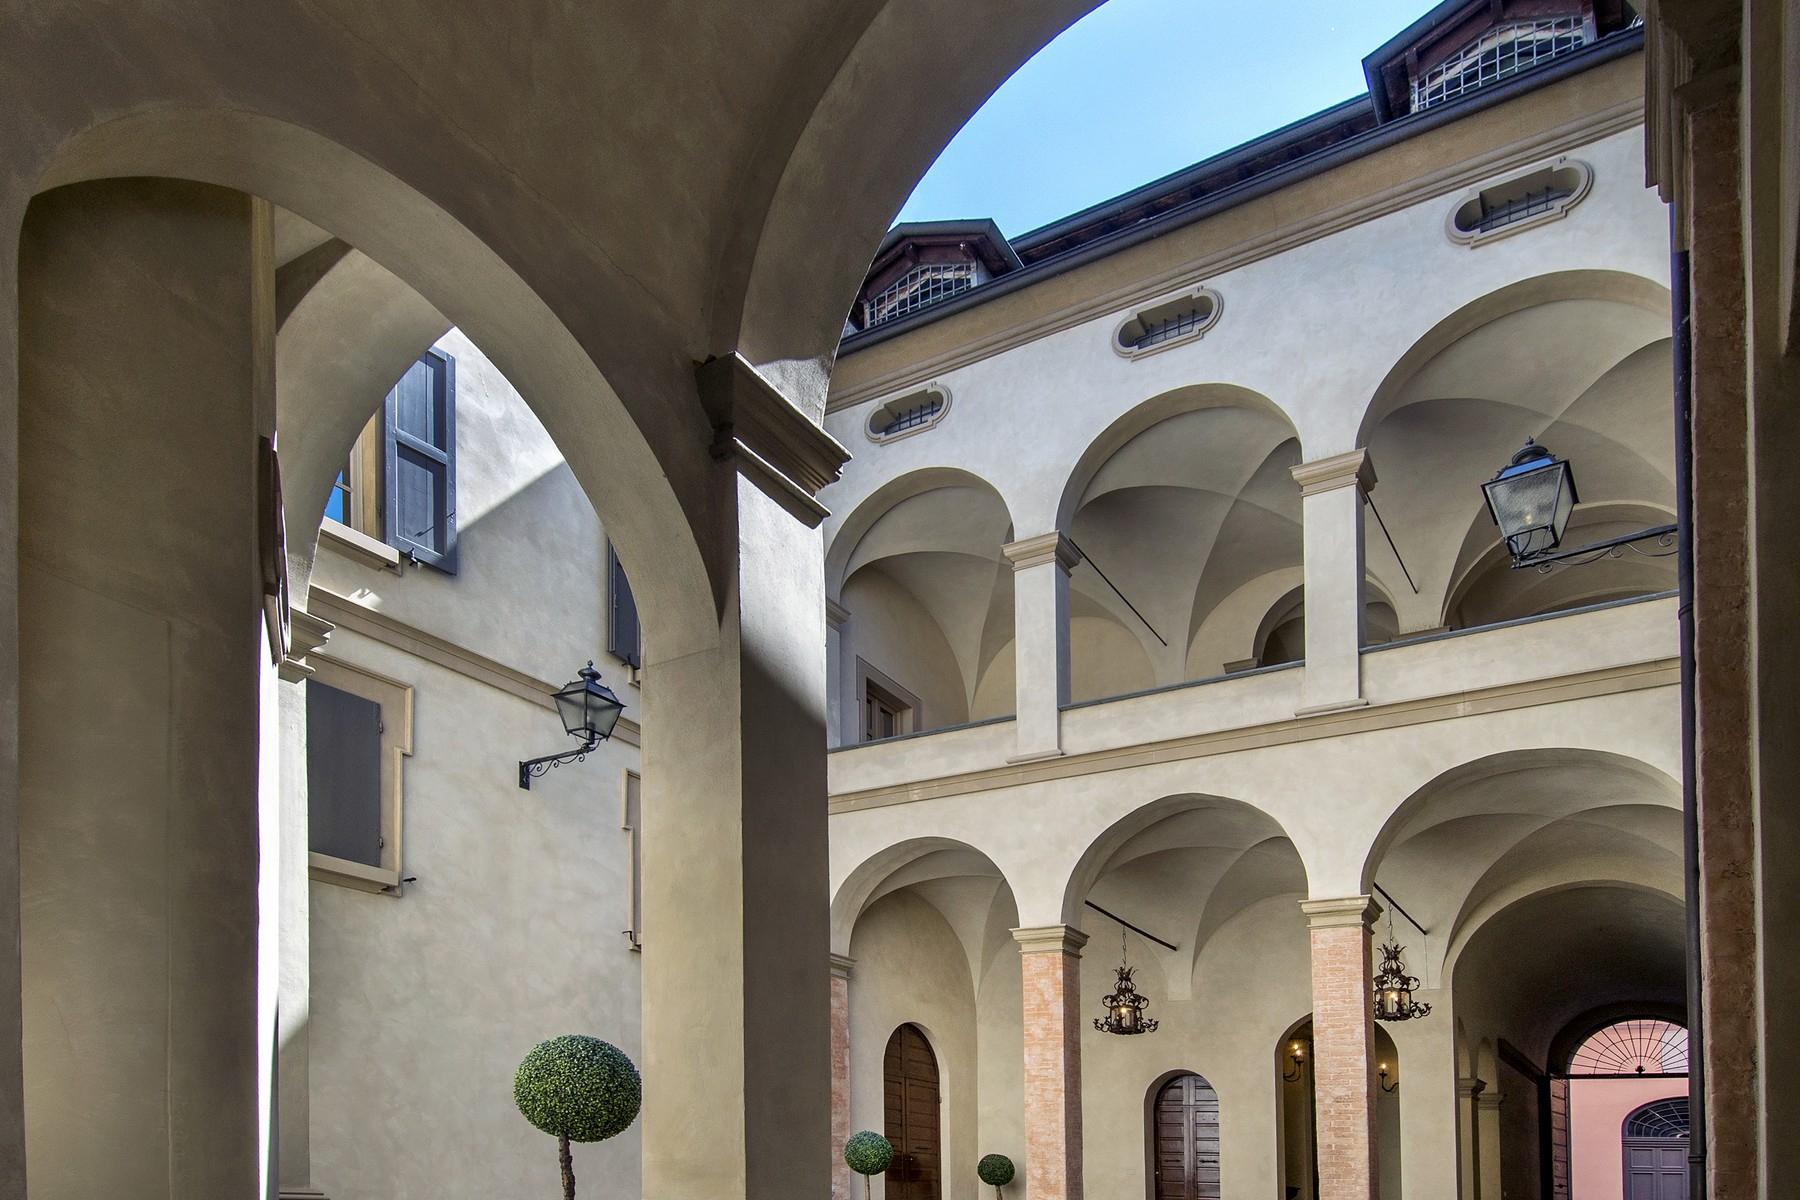 Meraviglioso palazzo storico nel cuore di Reggio Emilia - 22